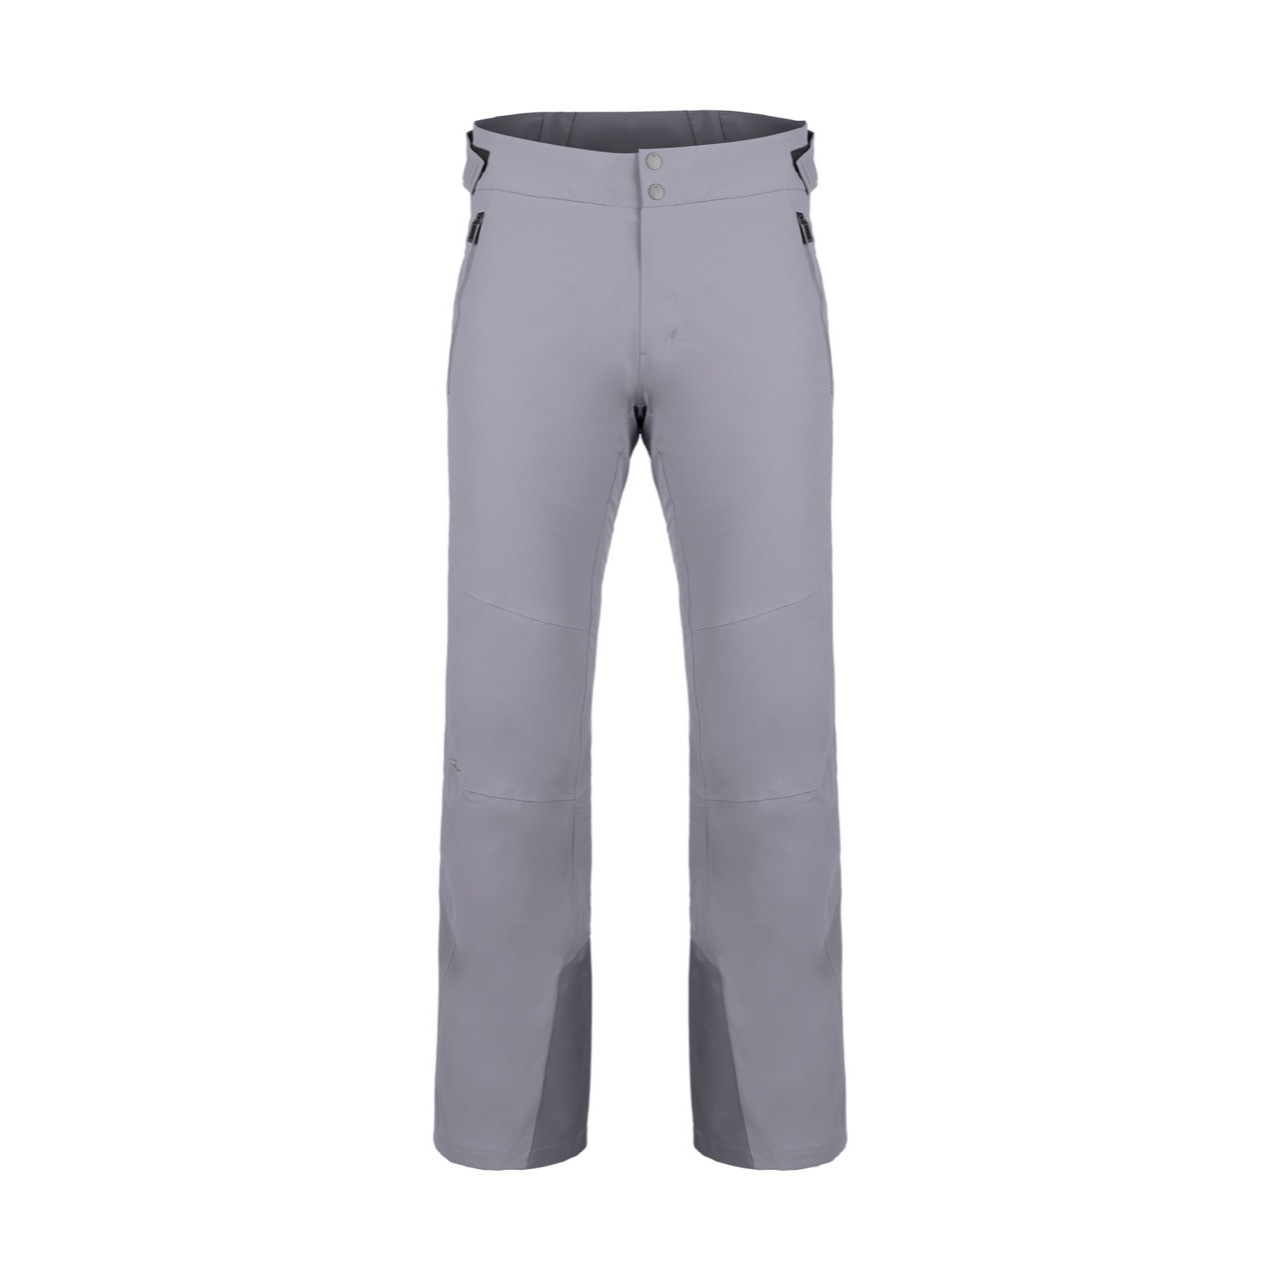 KJUS Men's Formula Ski Pants - Size 48 Small (US 32) - Atlanta Blue - NEW